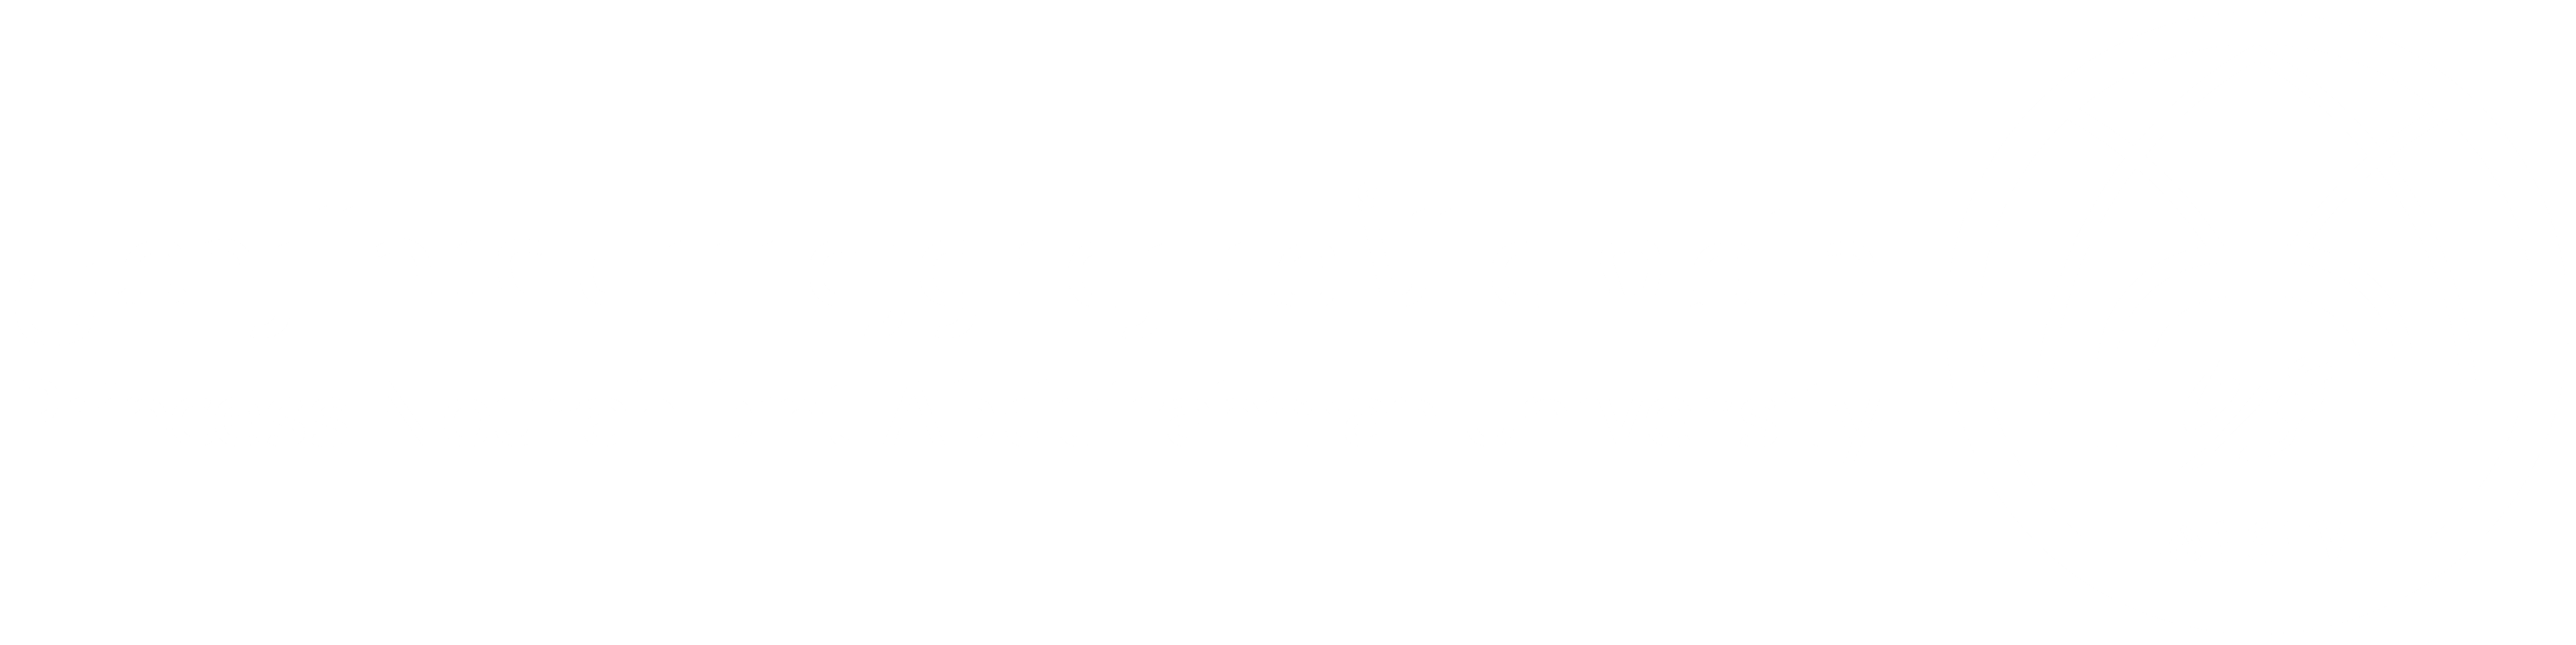 تسجيل الدخول الموحد لبوابة الخدمات الإلكترونية جامعة الأميرة نورة بنت عبدالرحمن